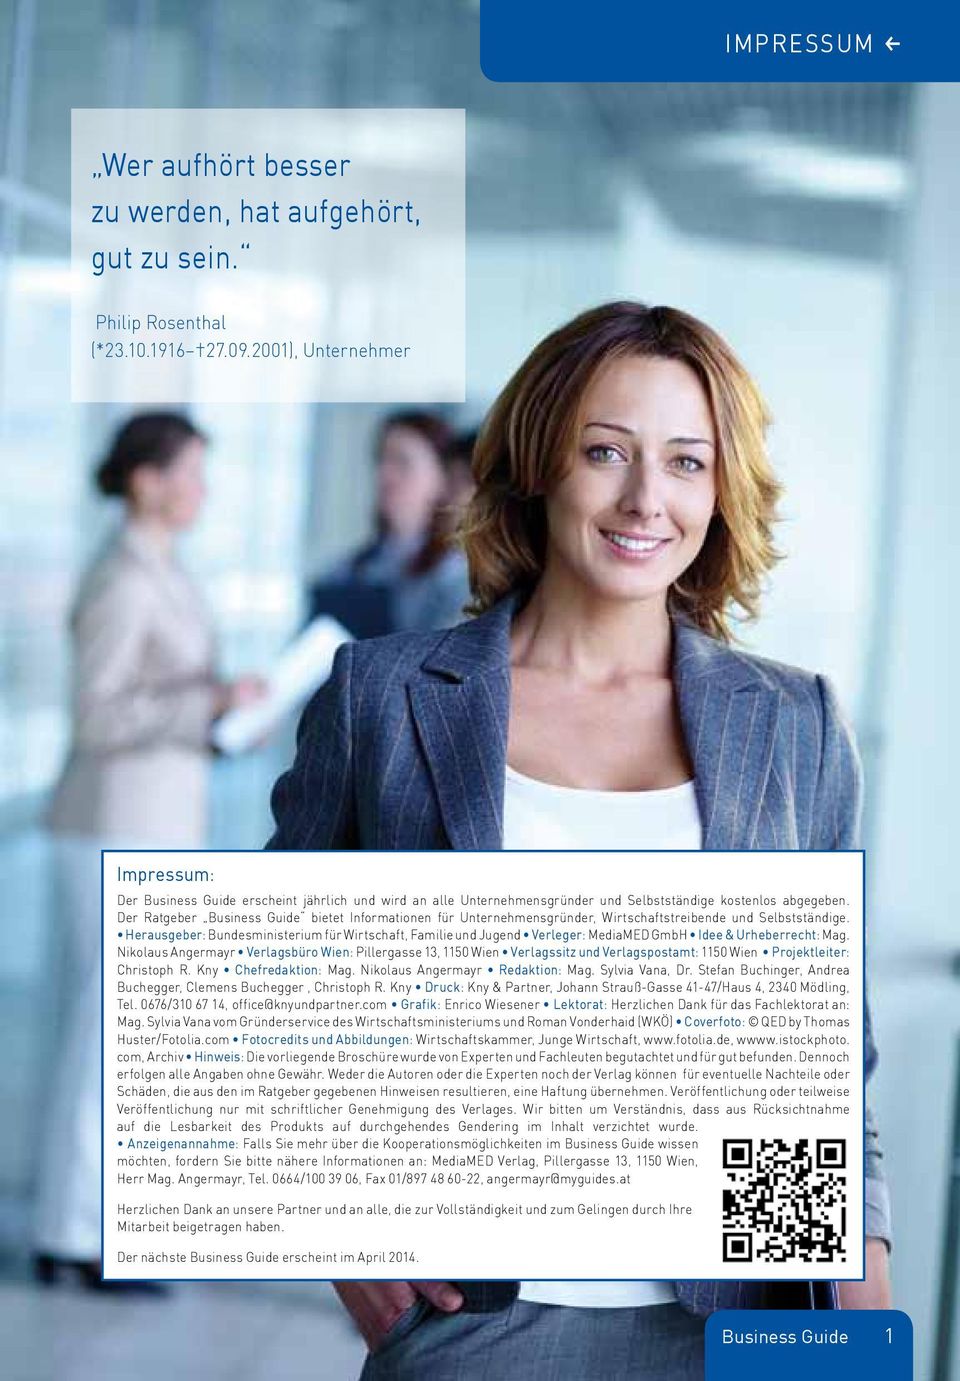 Der Ratgeber Business Guide bietet Informationen für Unternehmensgründer, Wirtschaftstreibende und Selbstständige.